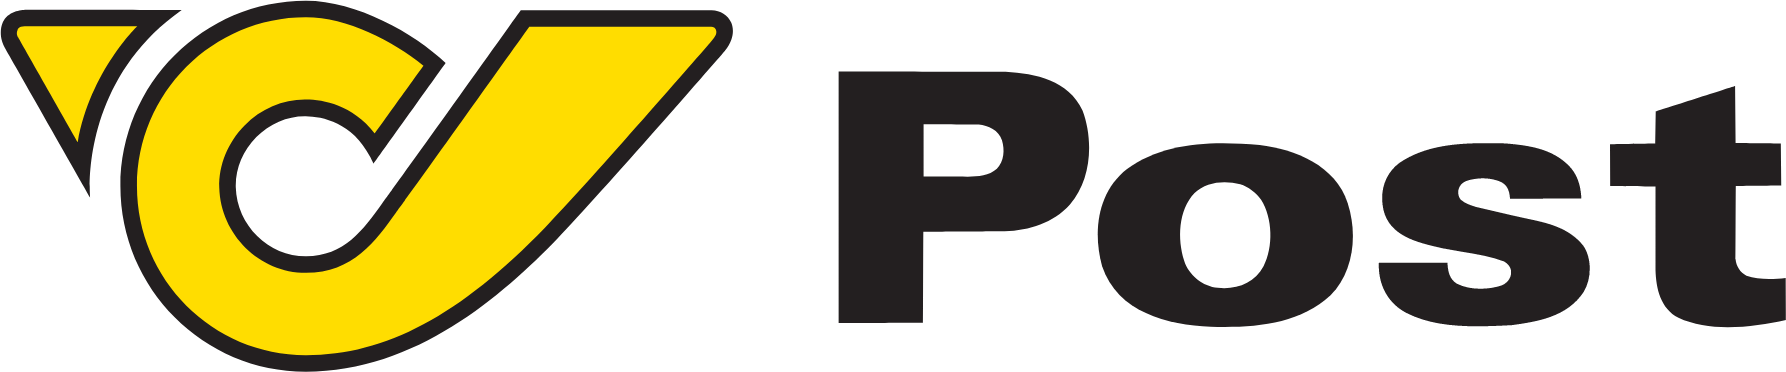 Österreichische Post
 logo large (transparent PNG)